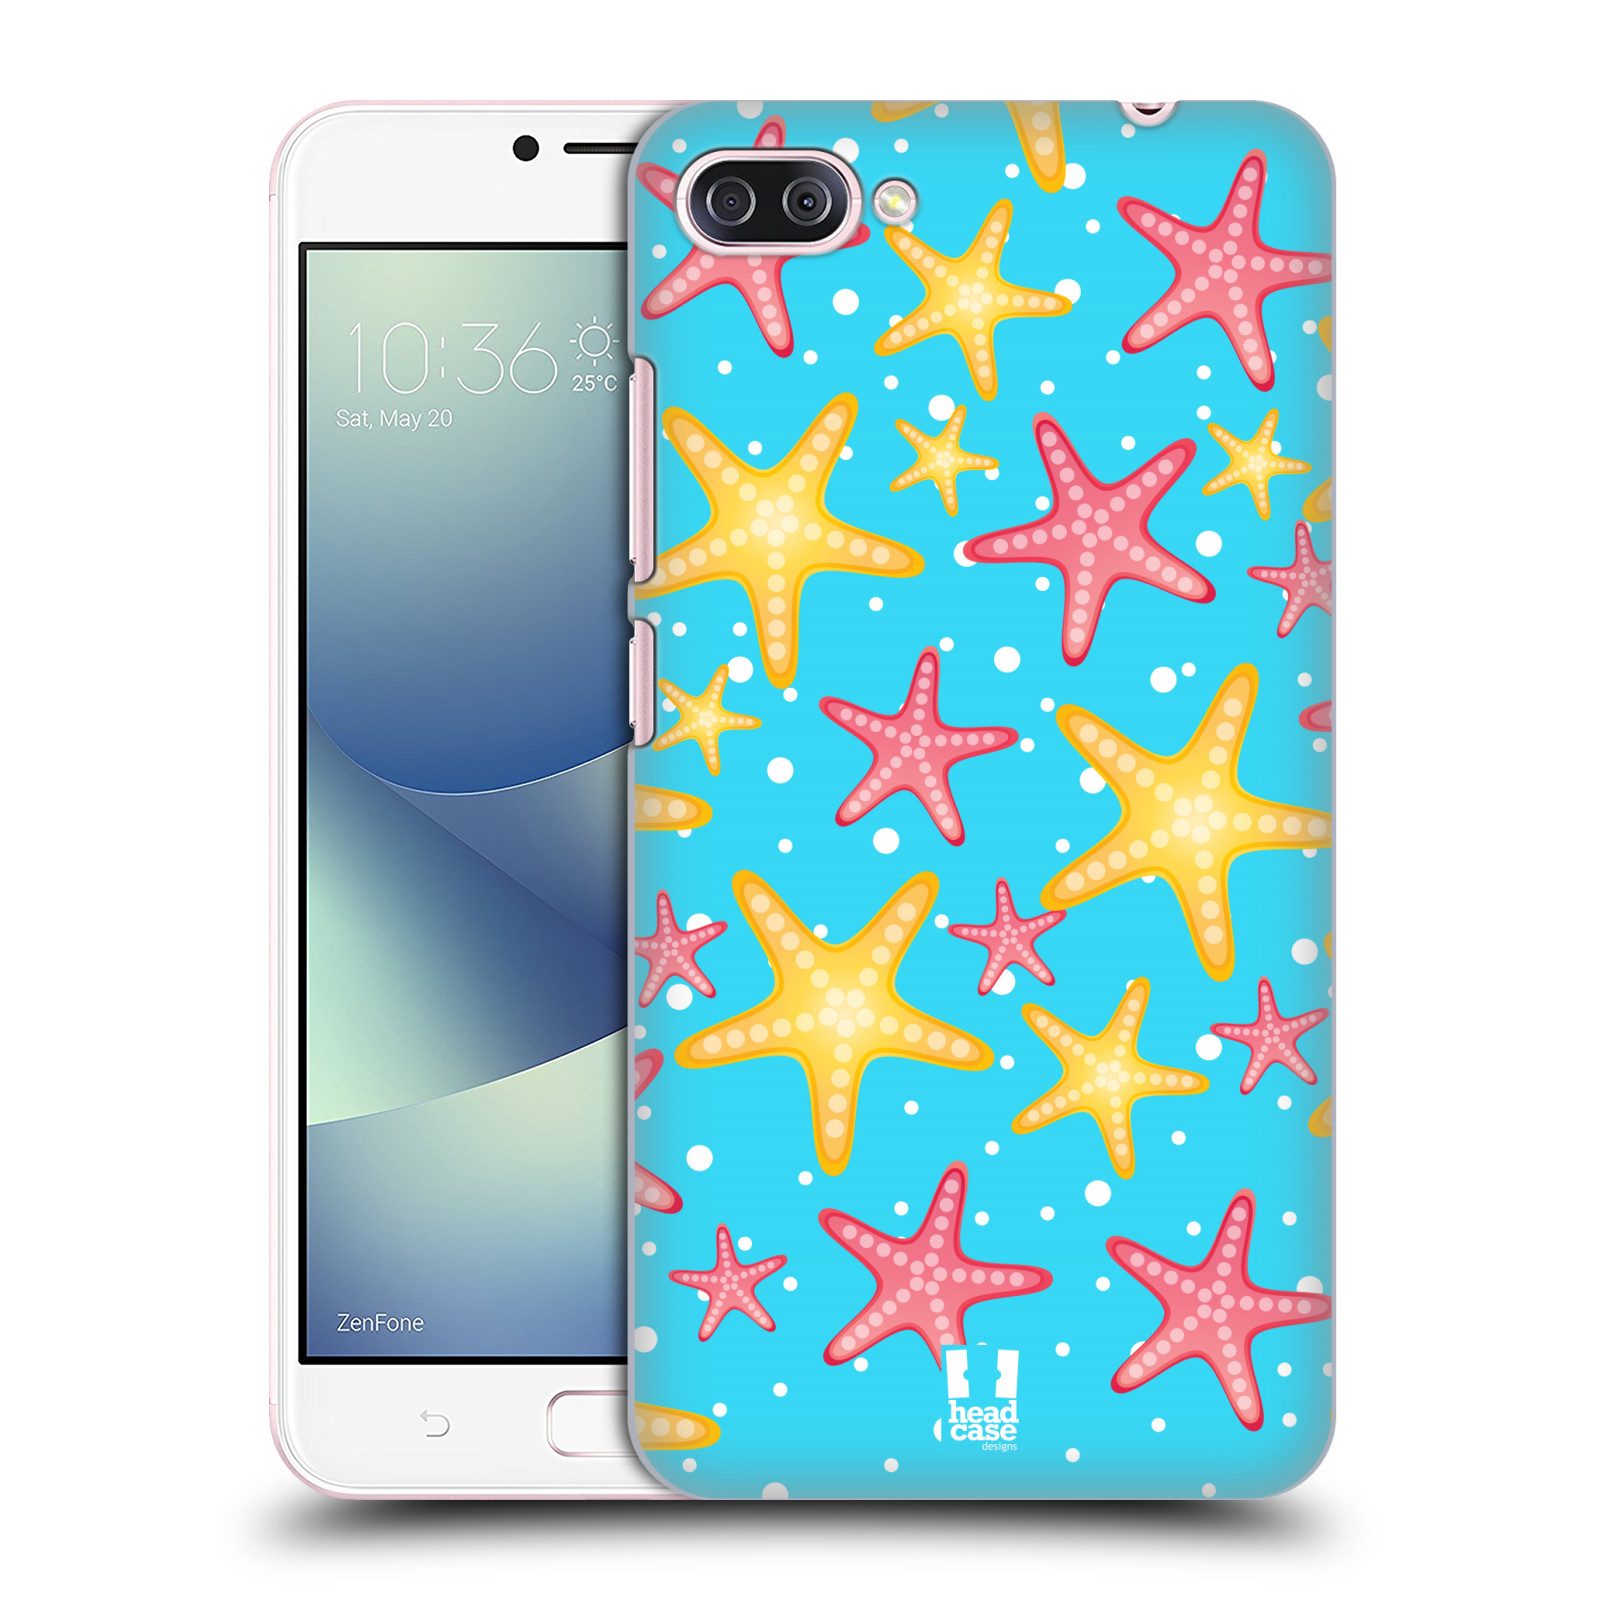 Zadní obal pro mobil Asus Zenfone 4 MAX / 4 MAX PRO (ZC554KL) - HEAD CASE - kreslený mořský vzor hvězda